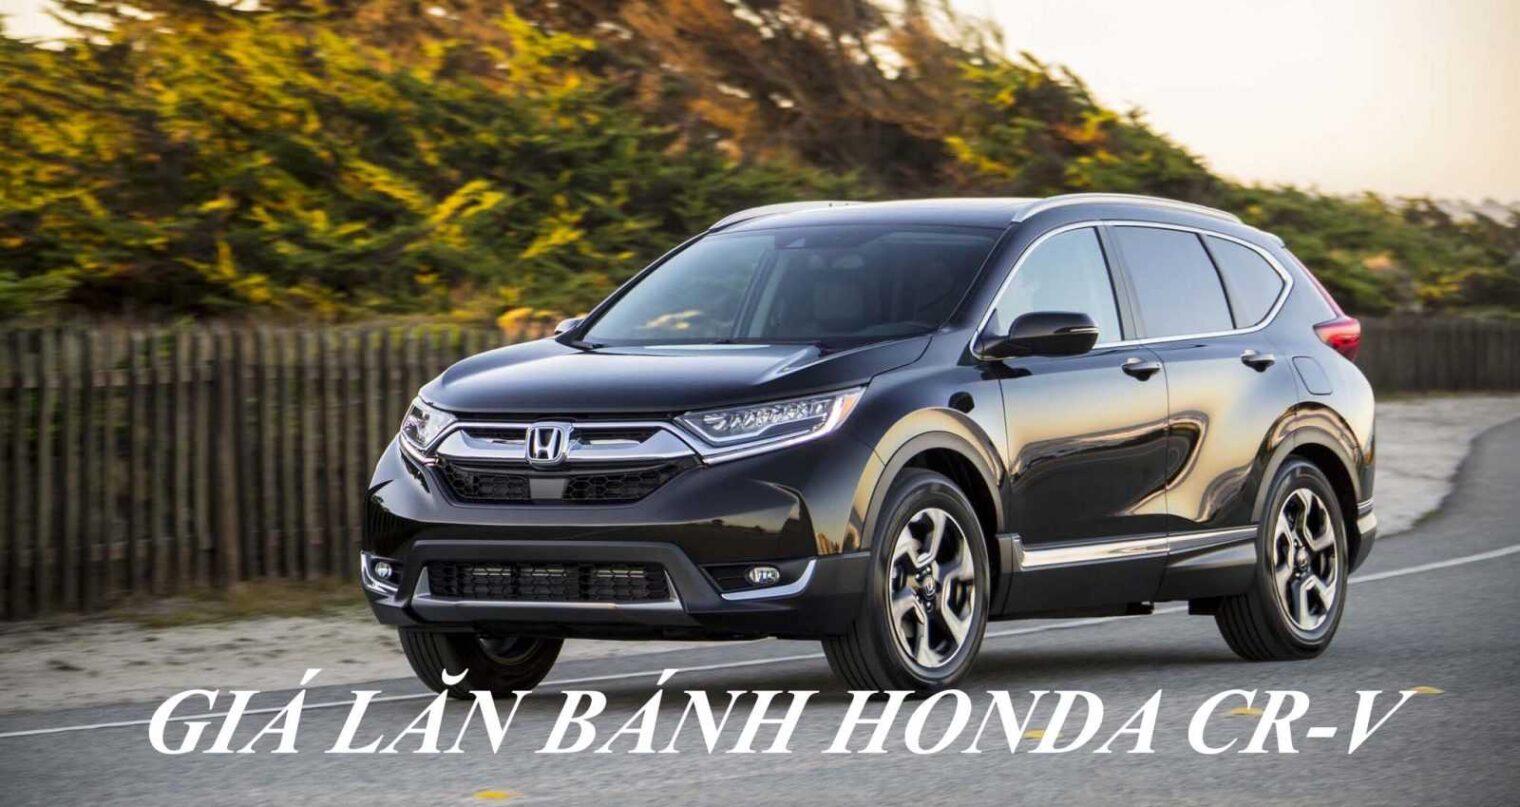 Giá Lăn Bánh Honda CR-V 2020 tại Honda Ô tô Tiền Giang – Đại Lý Honda Ô tô Chính Hãng tại Miền Tây